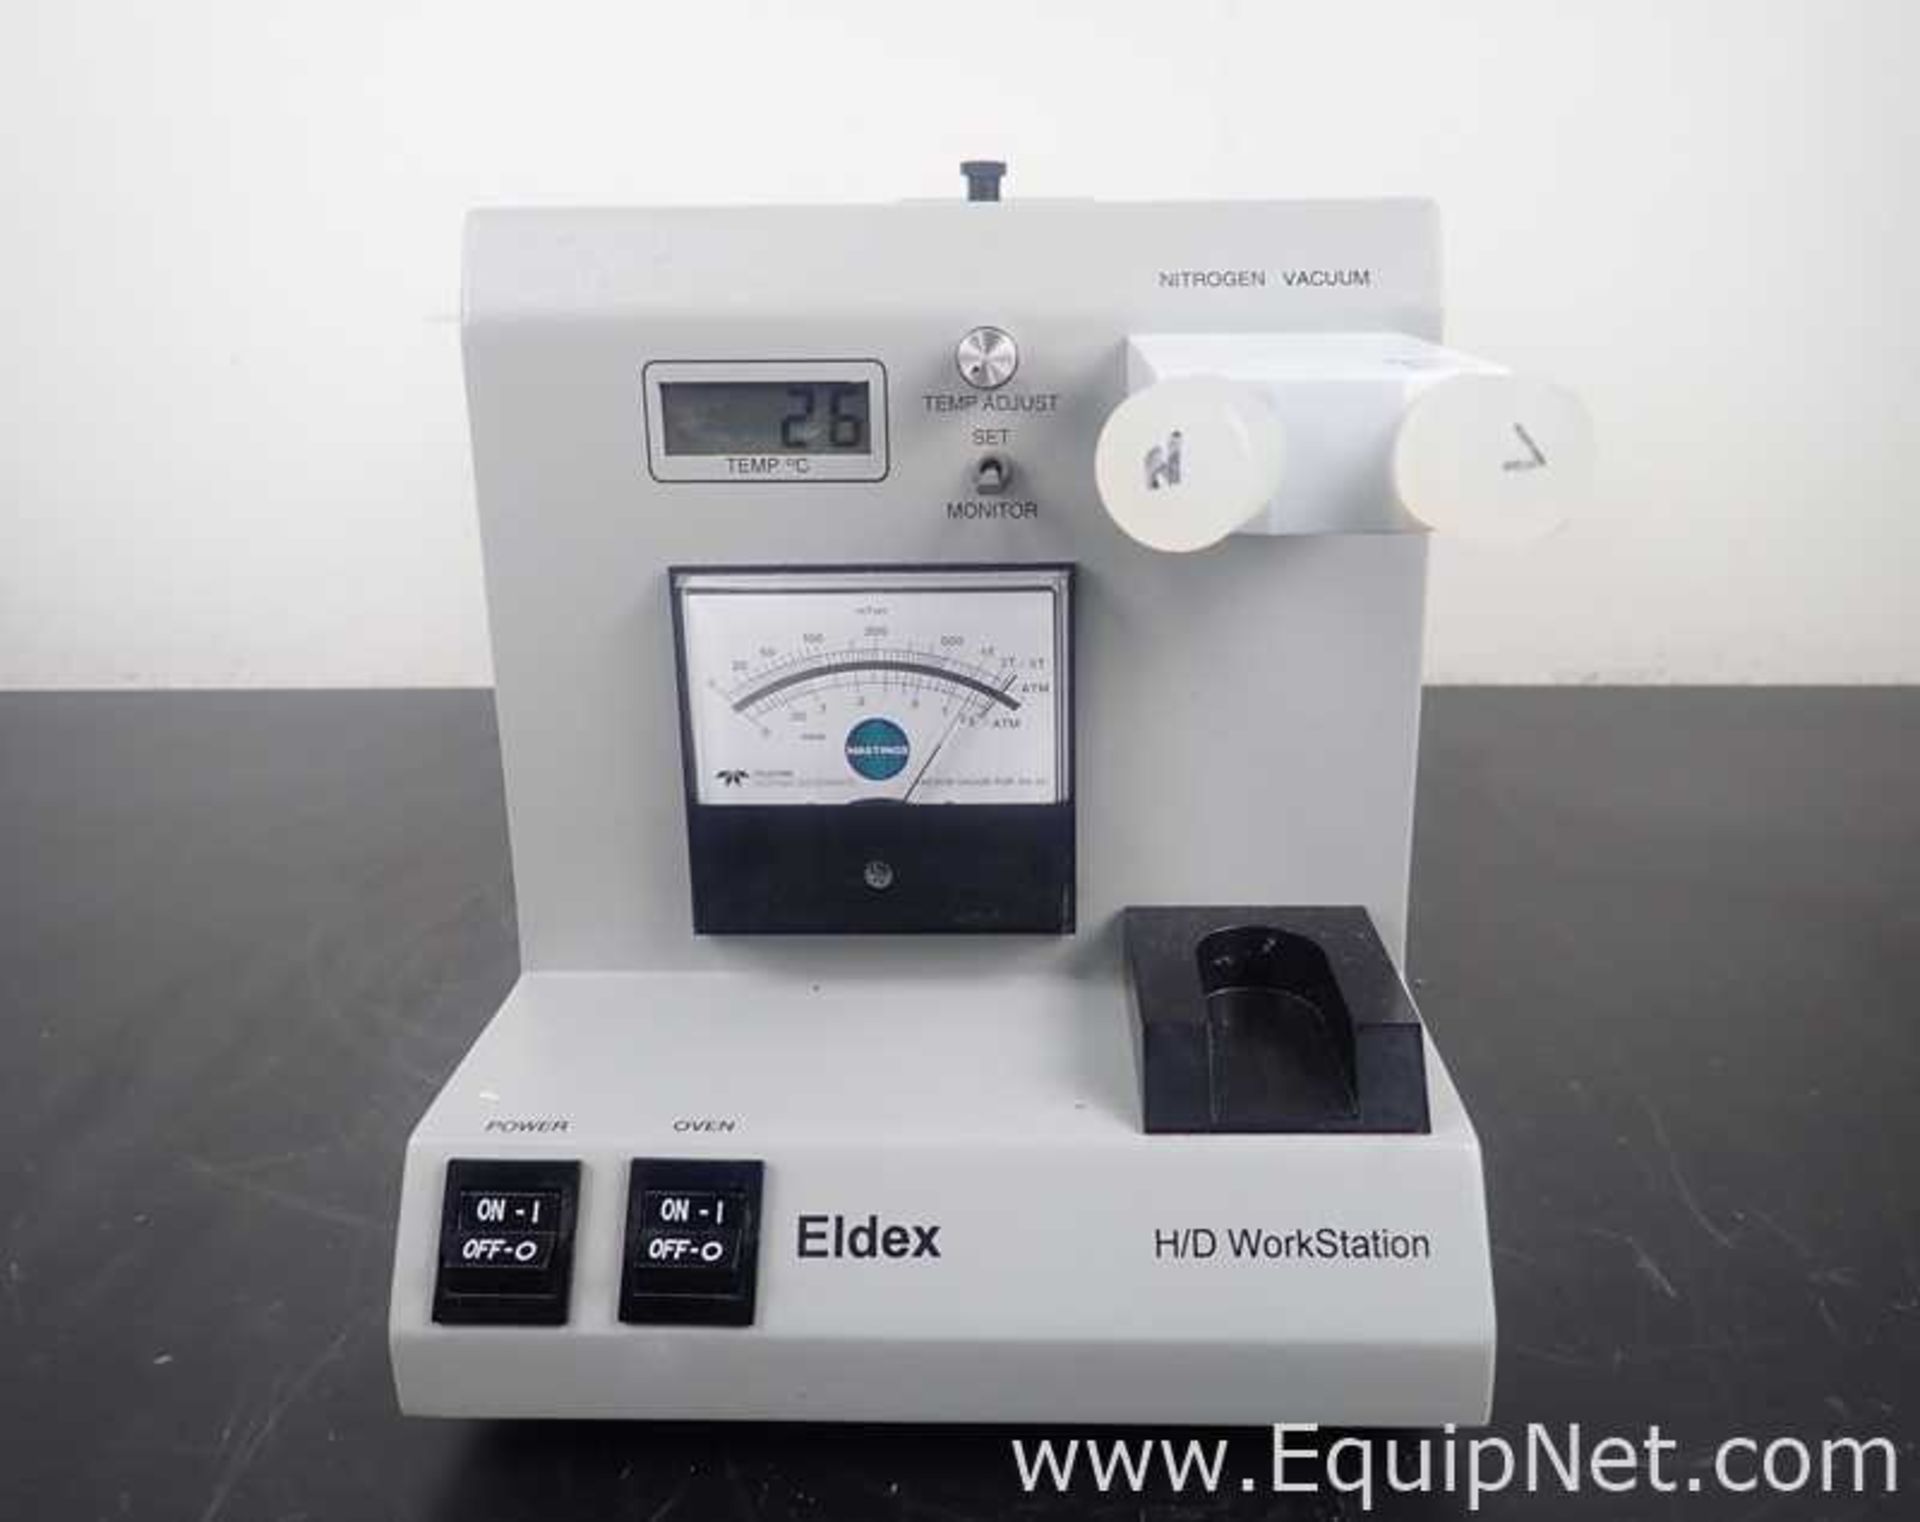 Eldex 1207 H/D Workstation